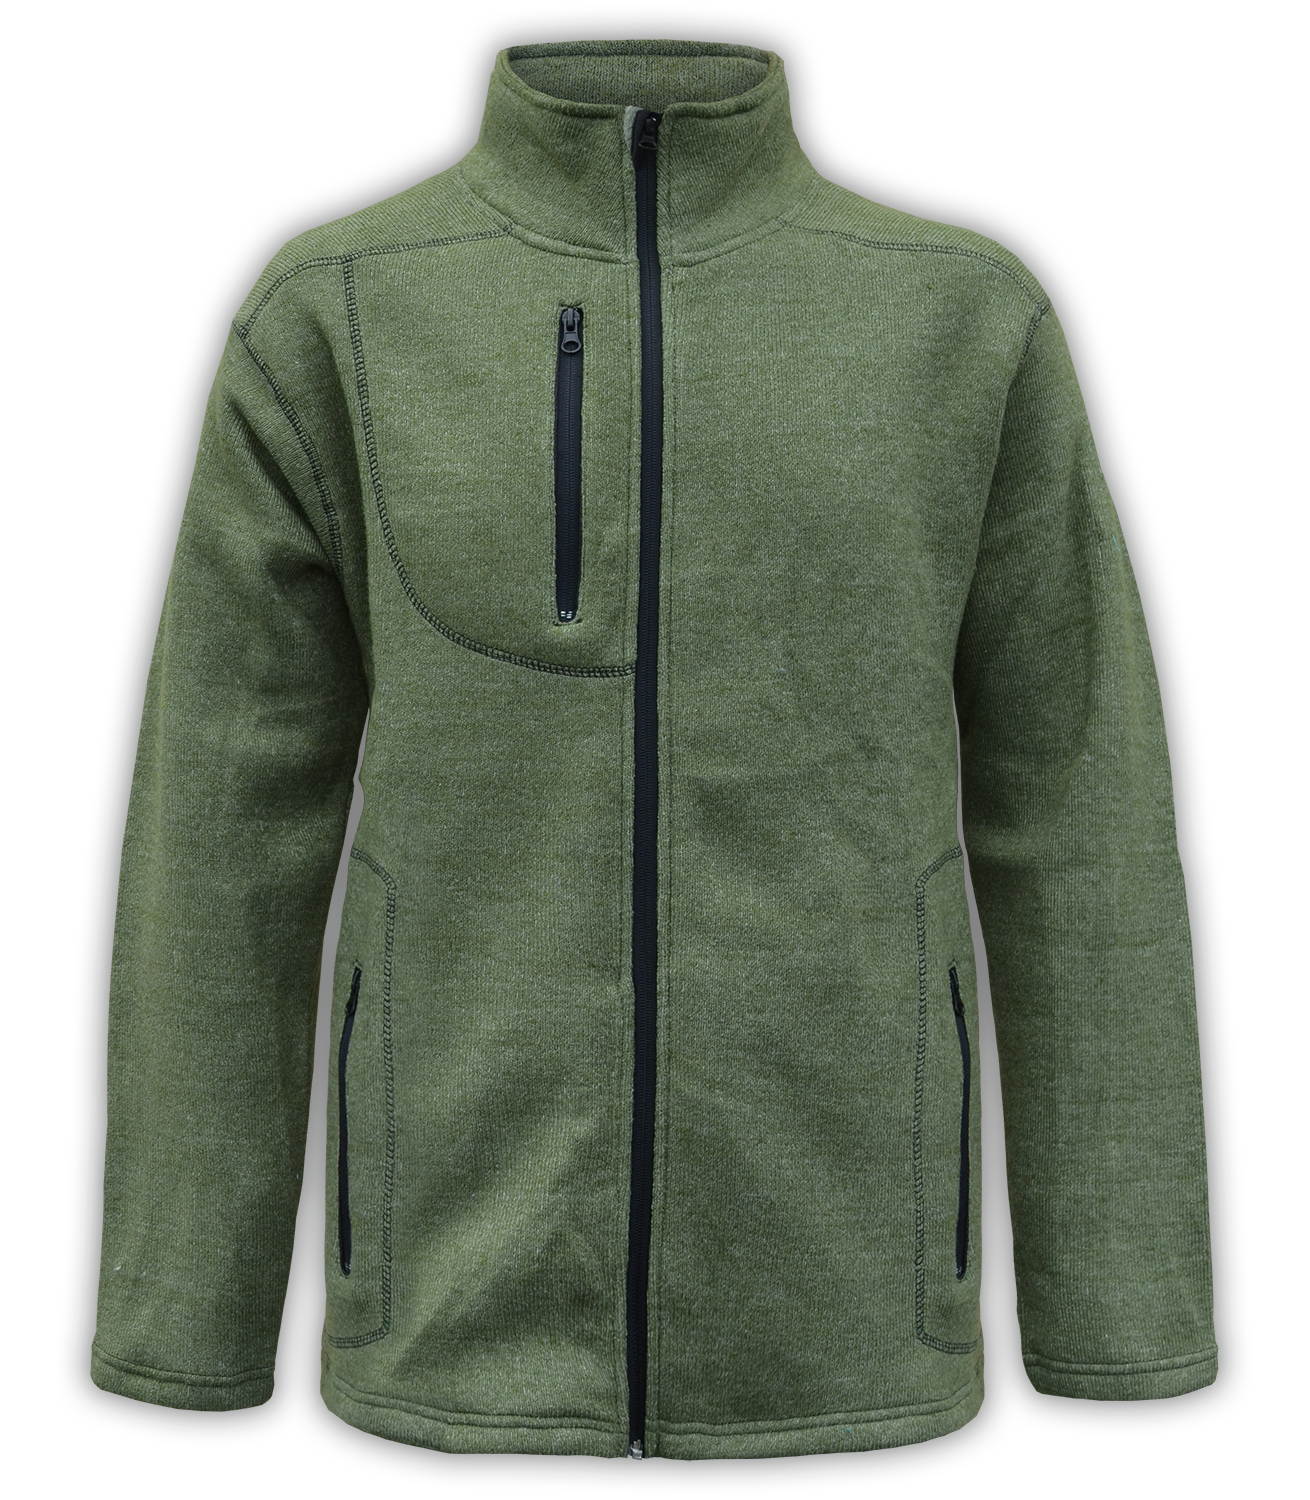 Renegade club unisex fleece jacket, full zip, nantucket soft fleece, mens jacket, womens jacket, olive, green